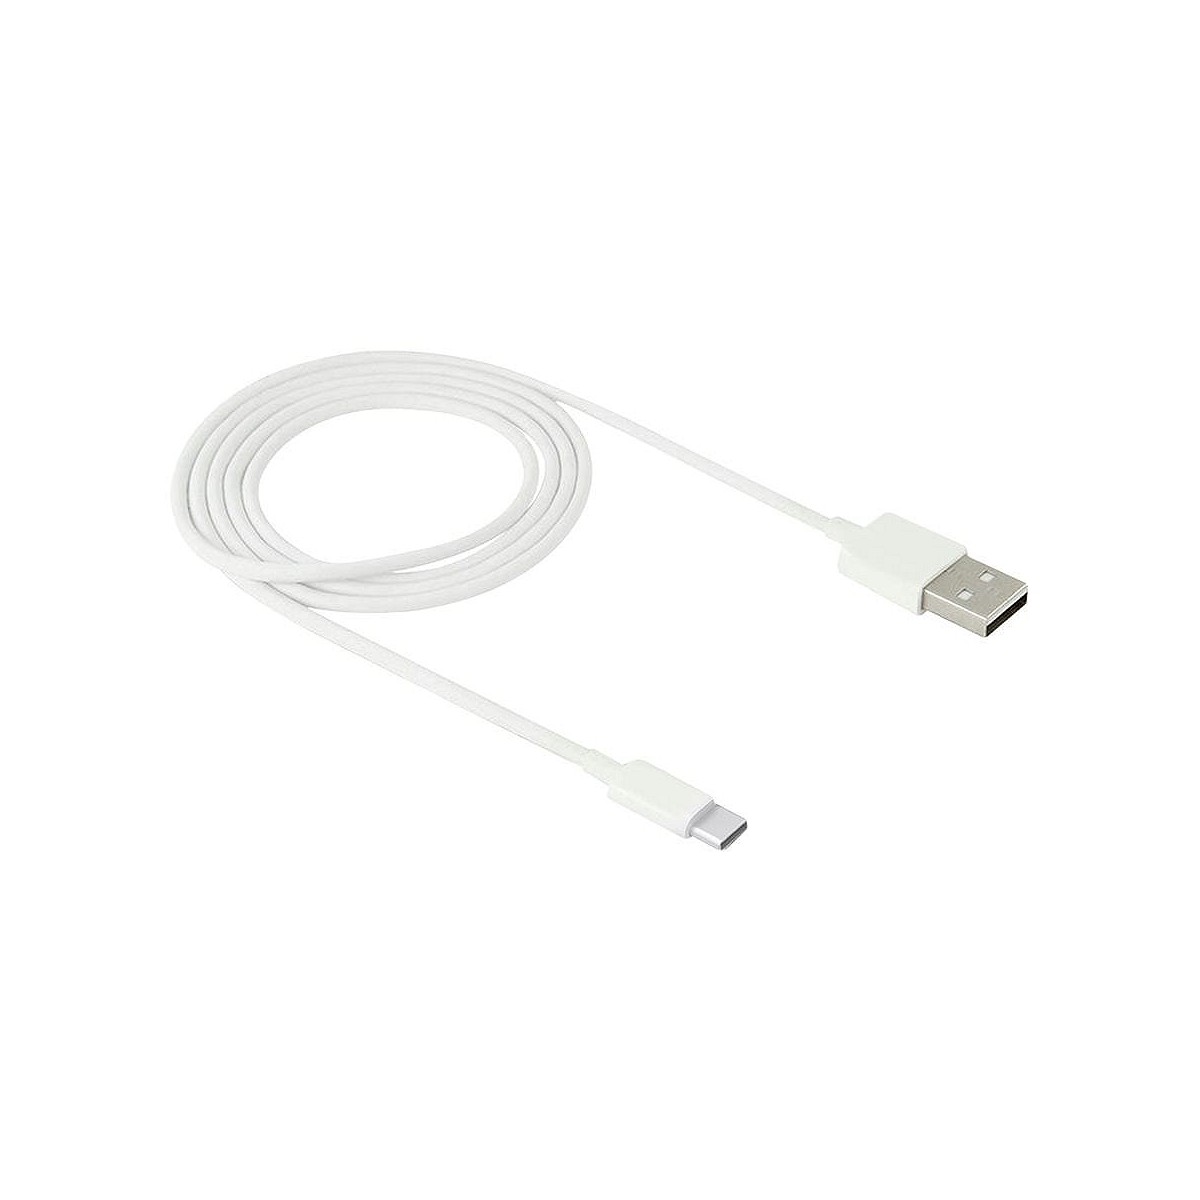 Compra CABLE CARGADOR ONLEX USB TIPO C 1M 1A al mejor precio